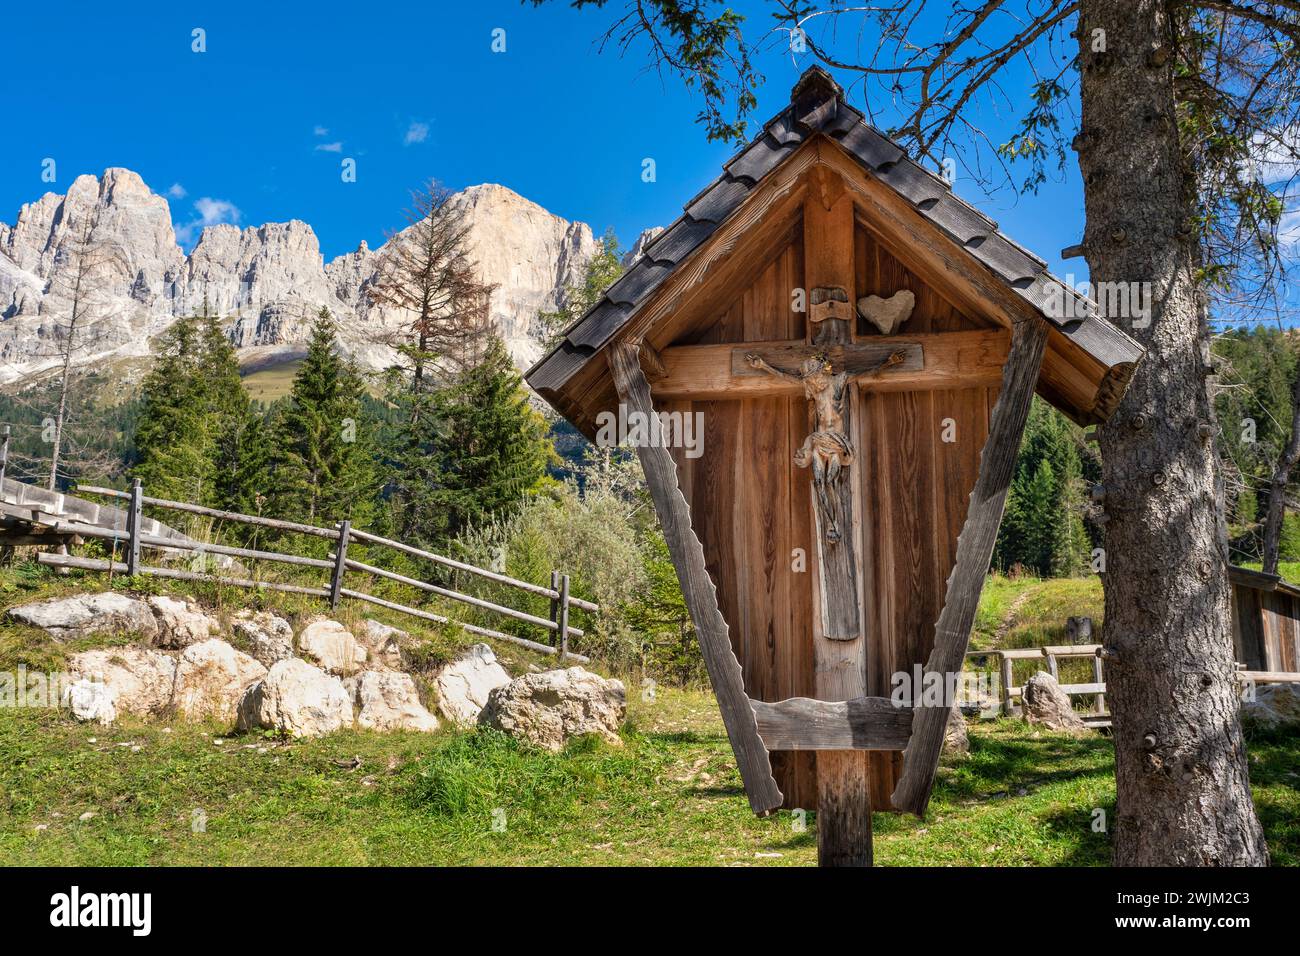 Santuario in legno con statua di gesù di fronte al massiccio del Rosengarten, Dolomiti, italia. Bel cielo blu. Foto Stock